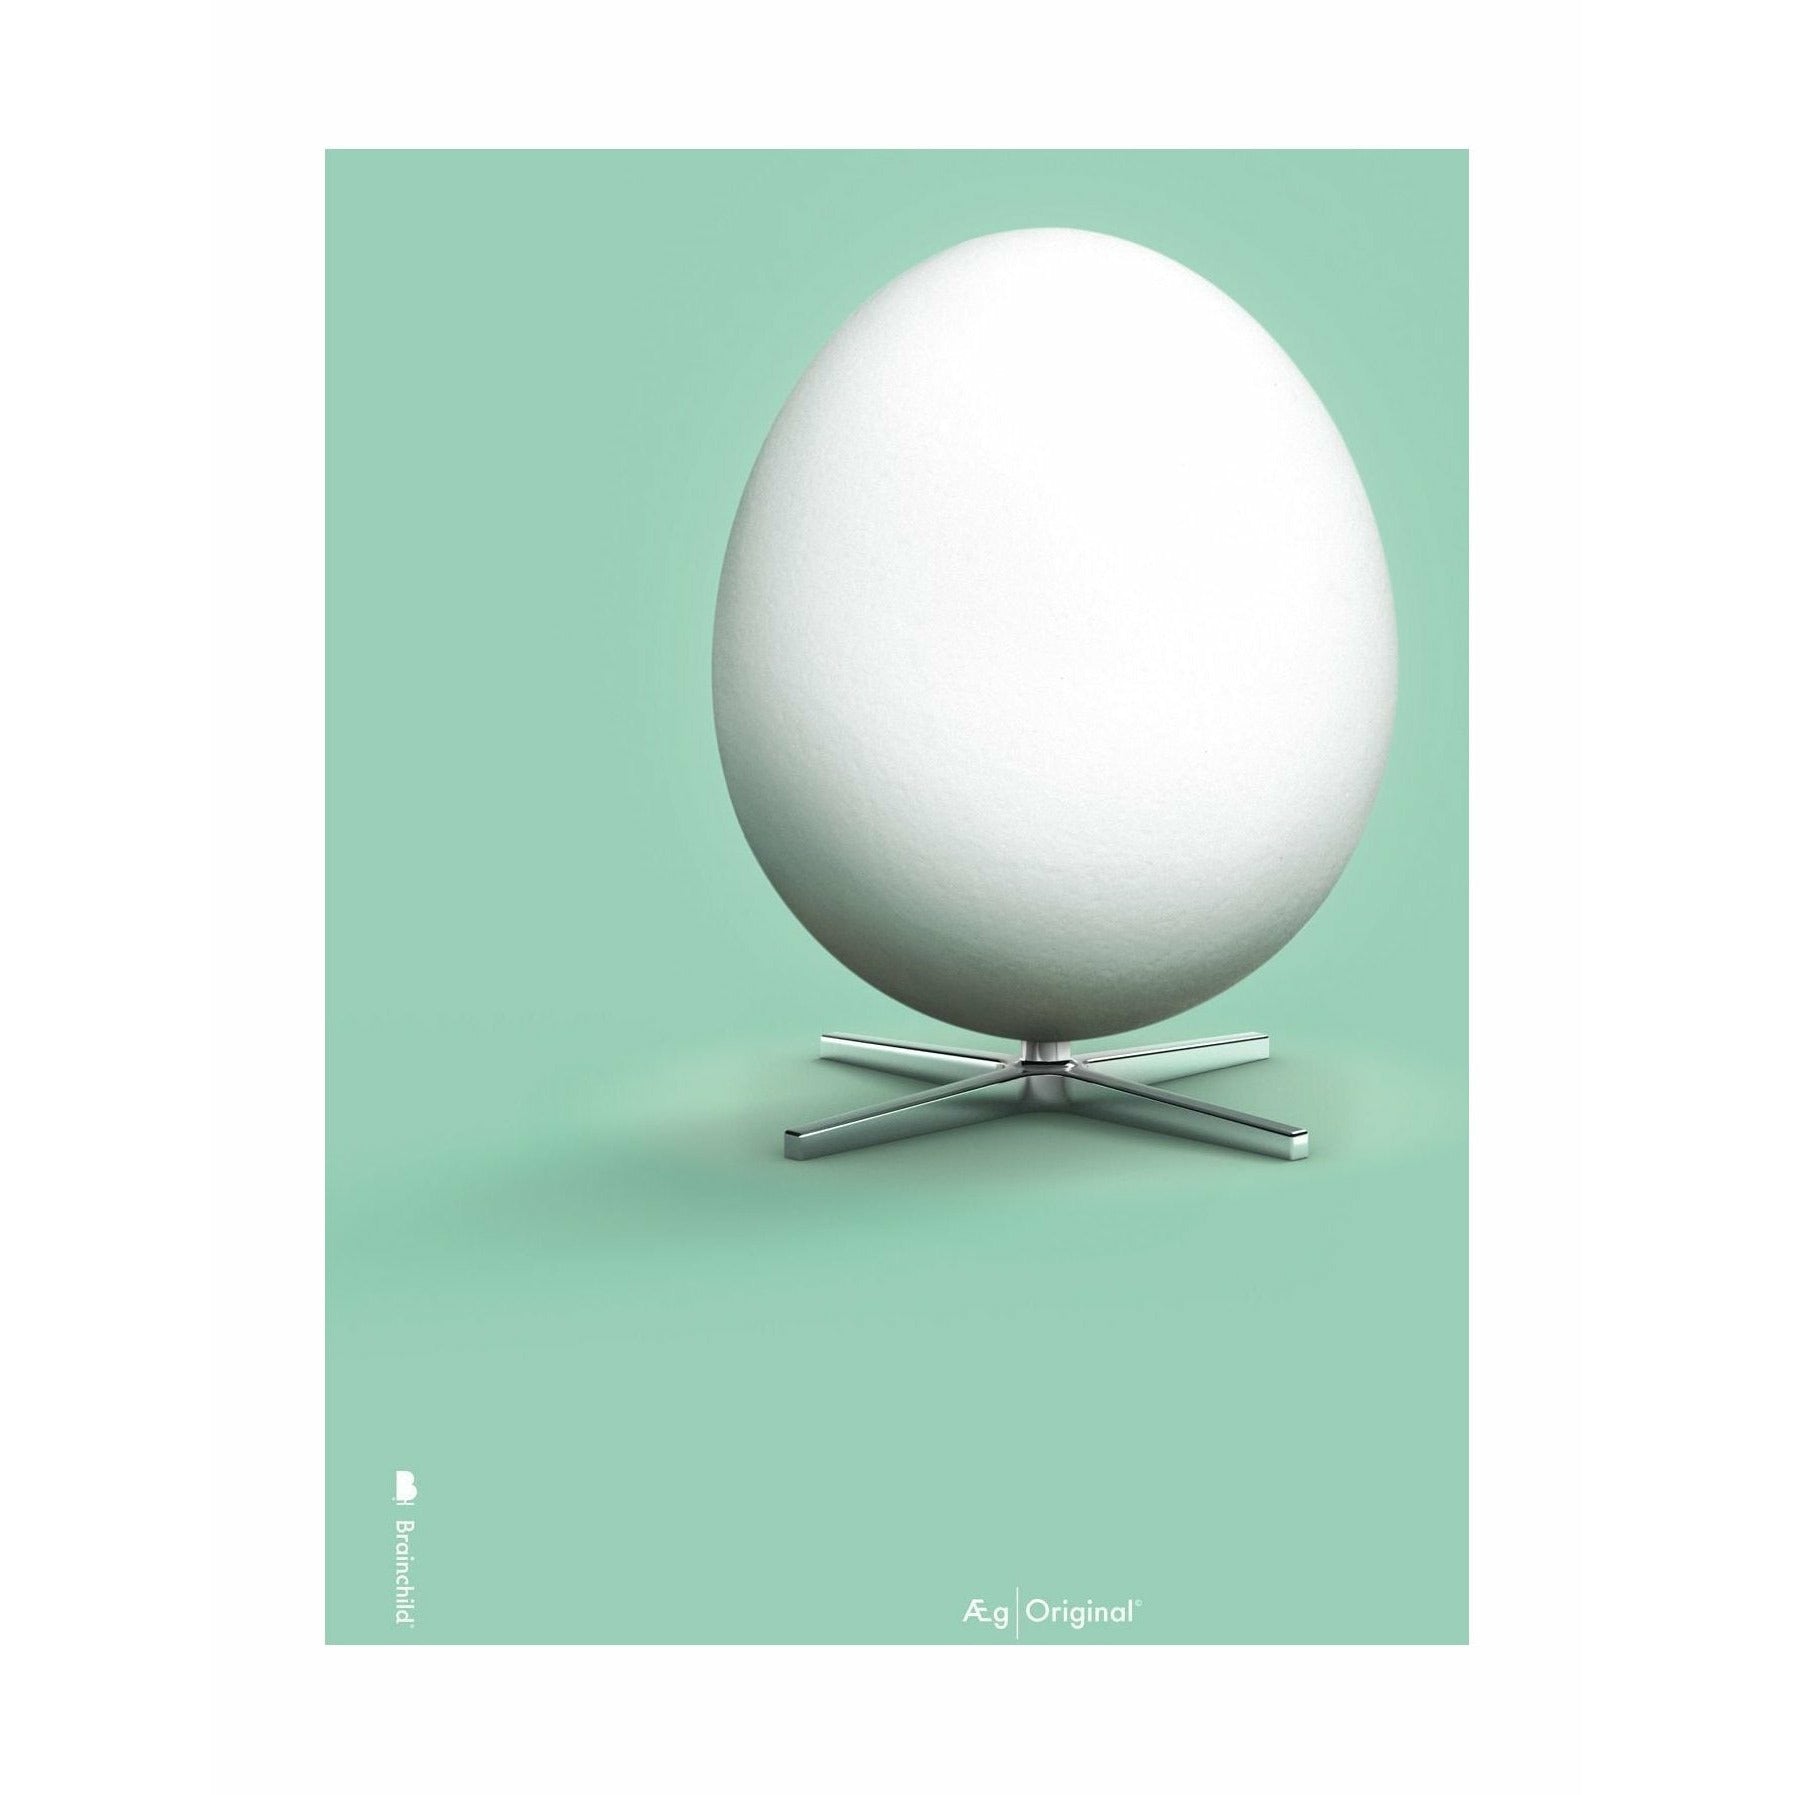 创意鸡蛋经典海报无框架A5，薄荷绿色背景